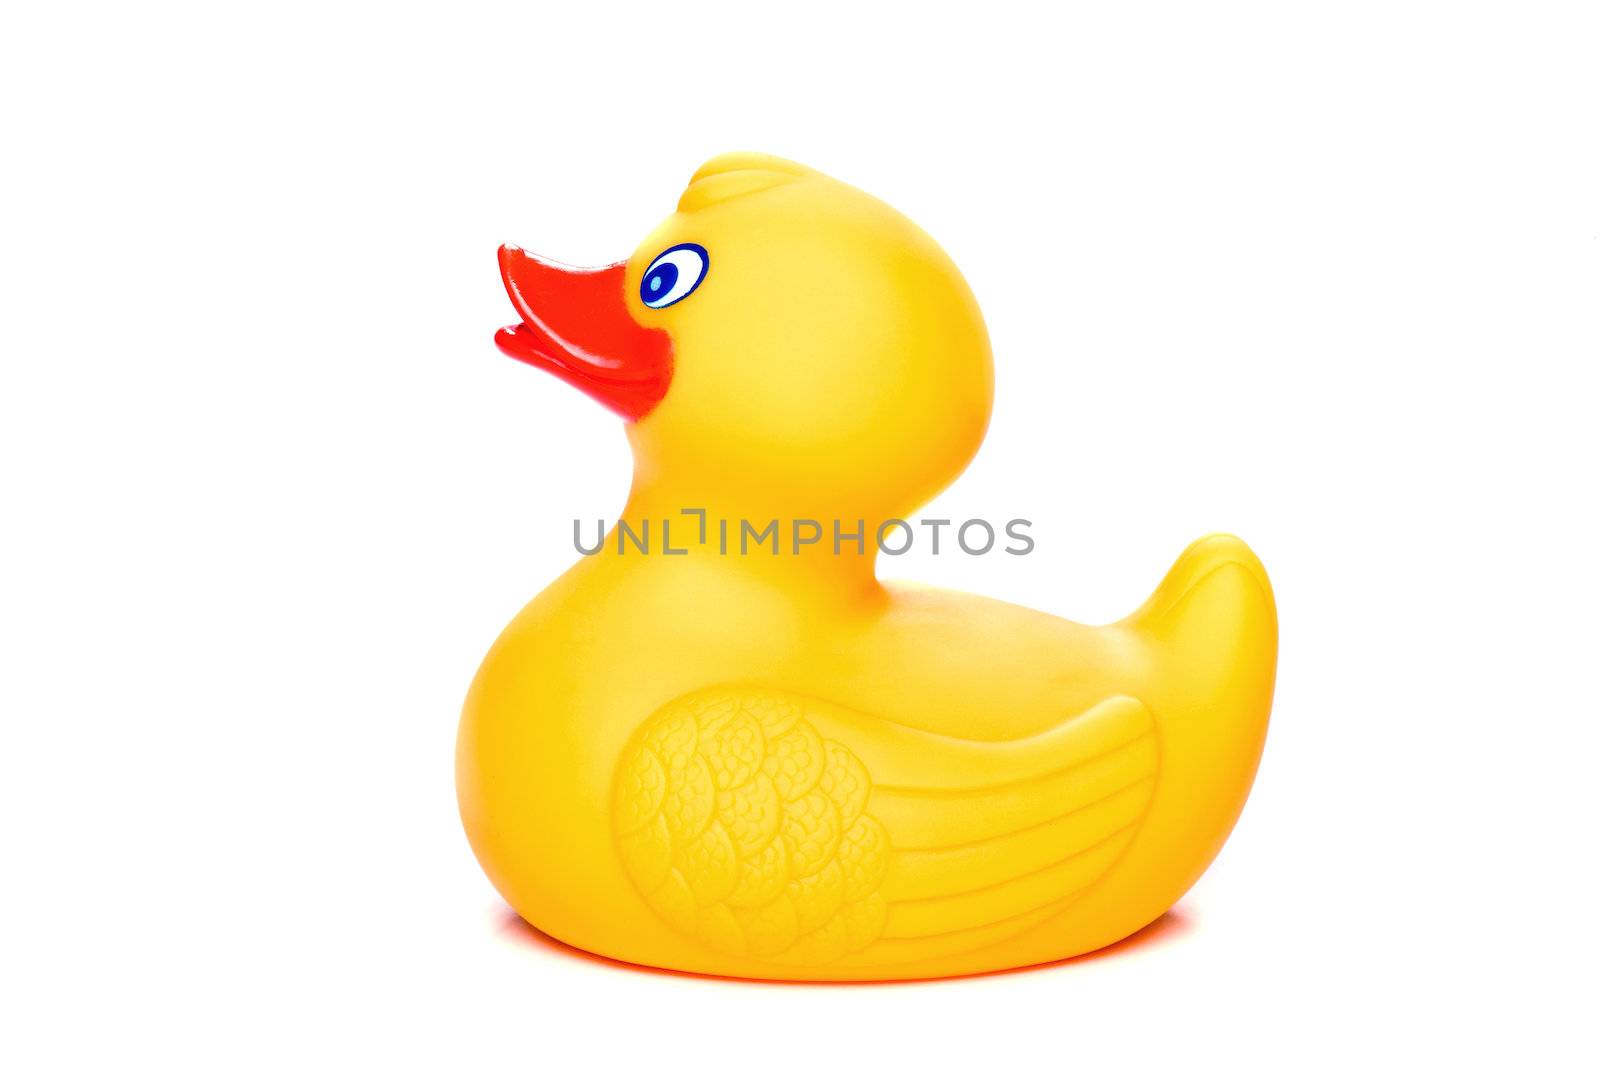 Rubber Duckling by Viktorus